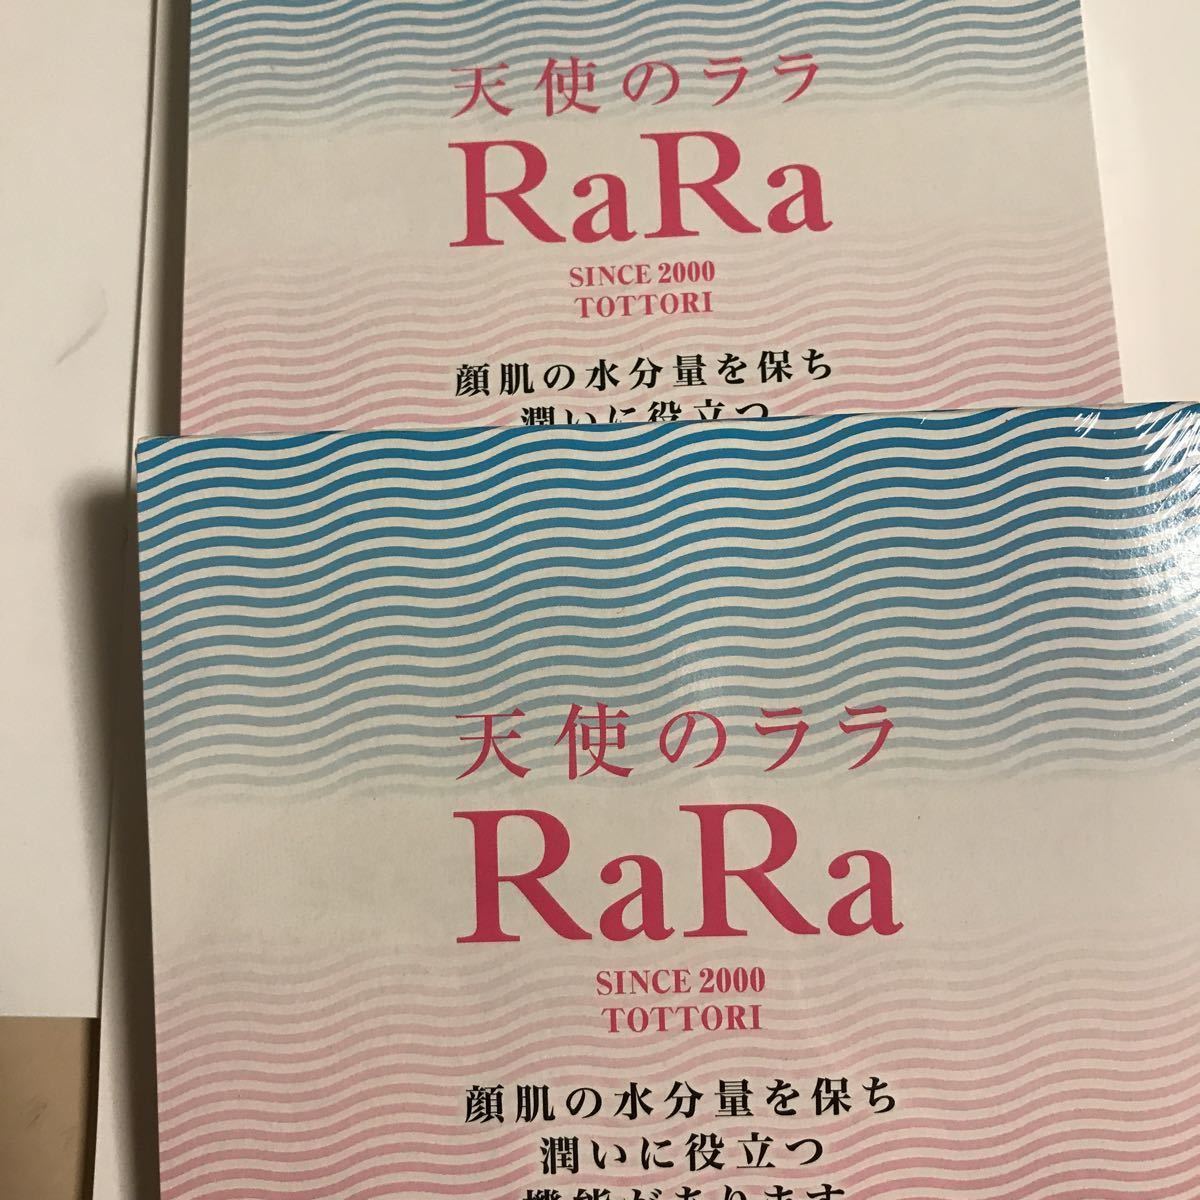 ☆天使のララ☆フィッシュコラーゲン10袋×2箱セット 美容飲料 ネコポス送料無料 新入荷